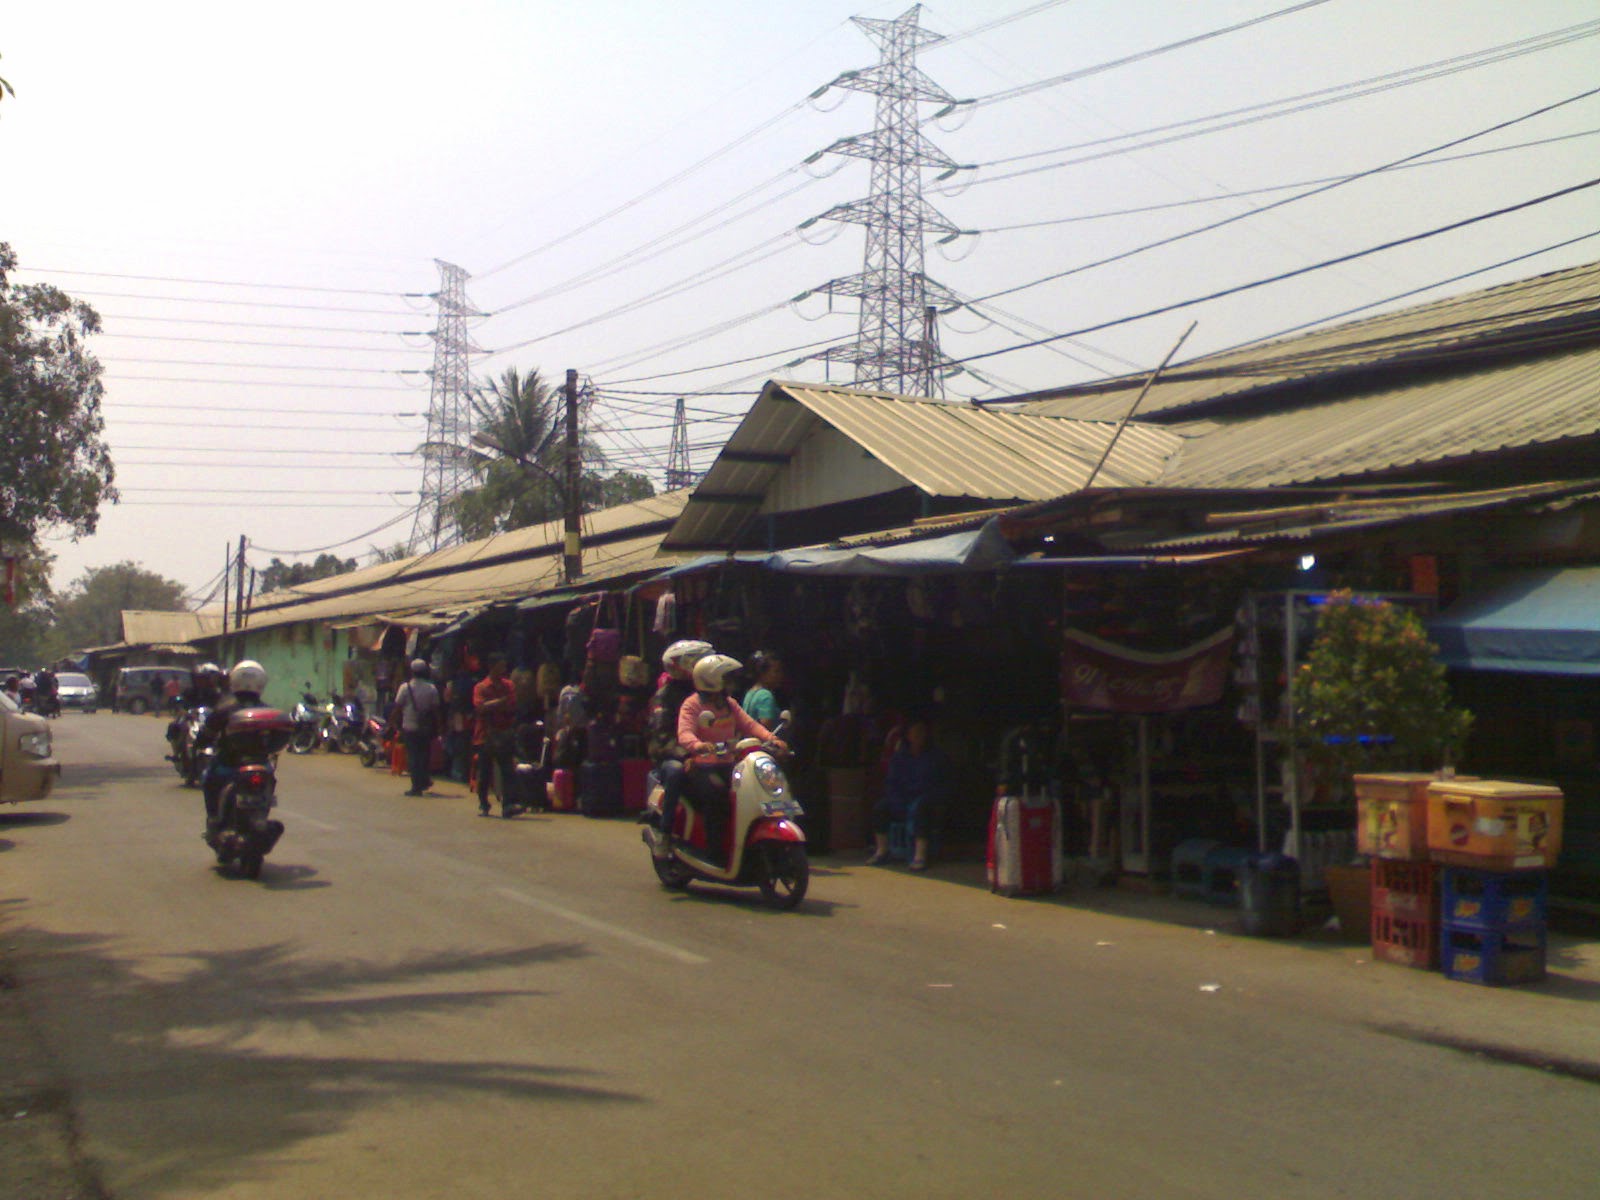 Pasar Ular Jakarta Utara